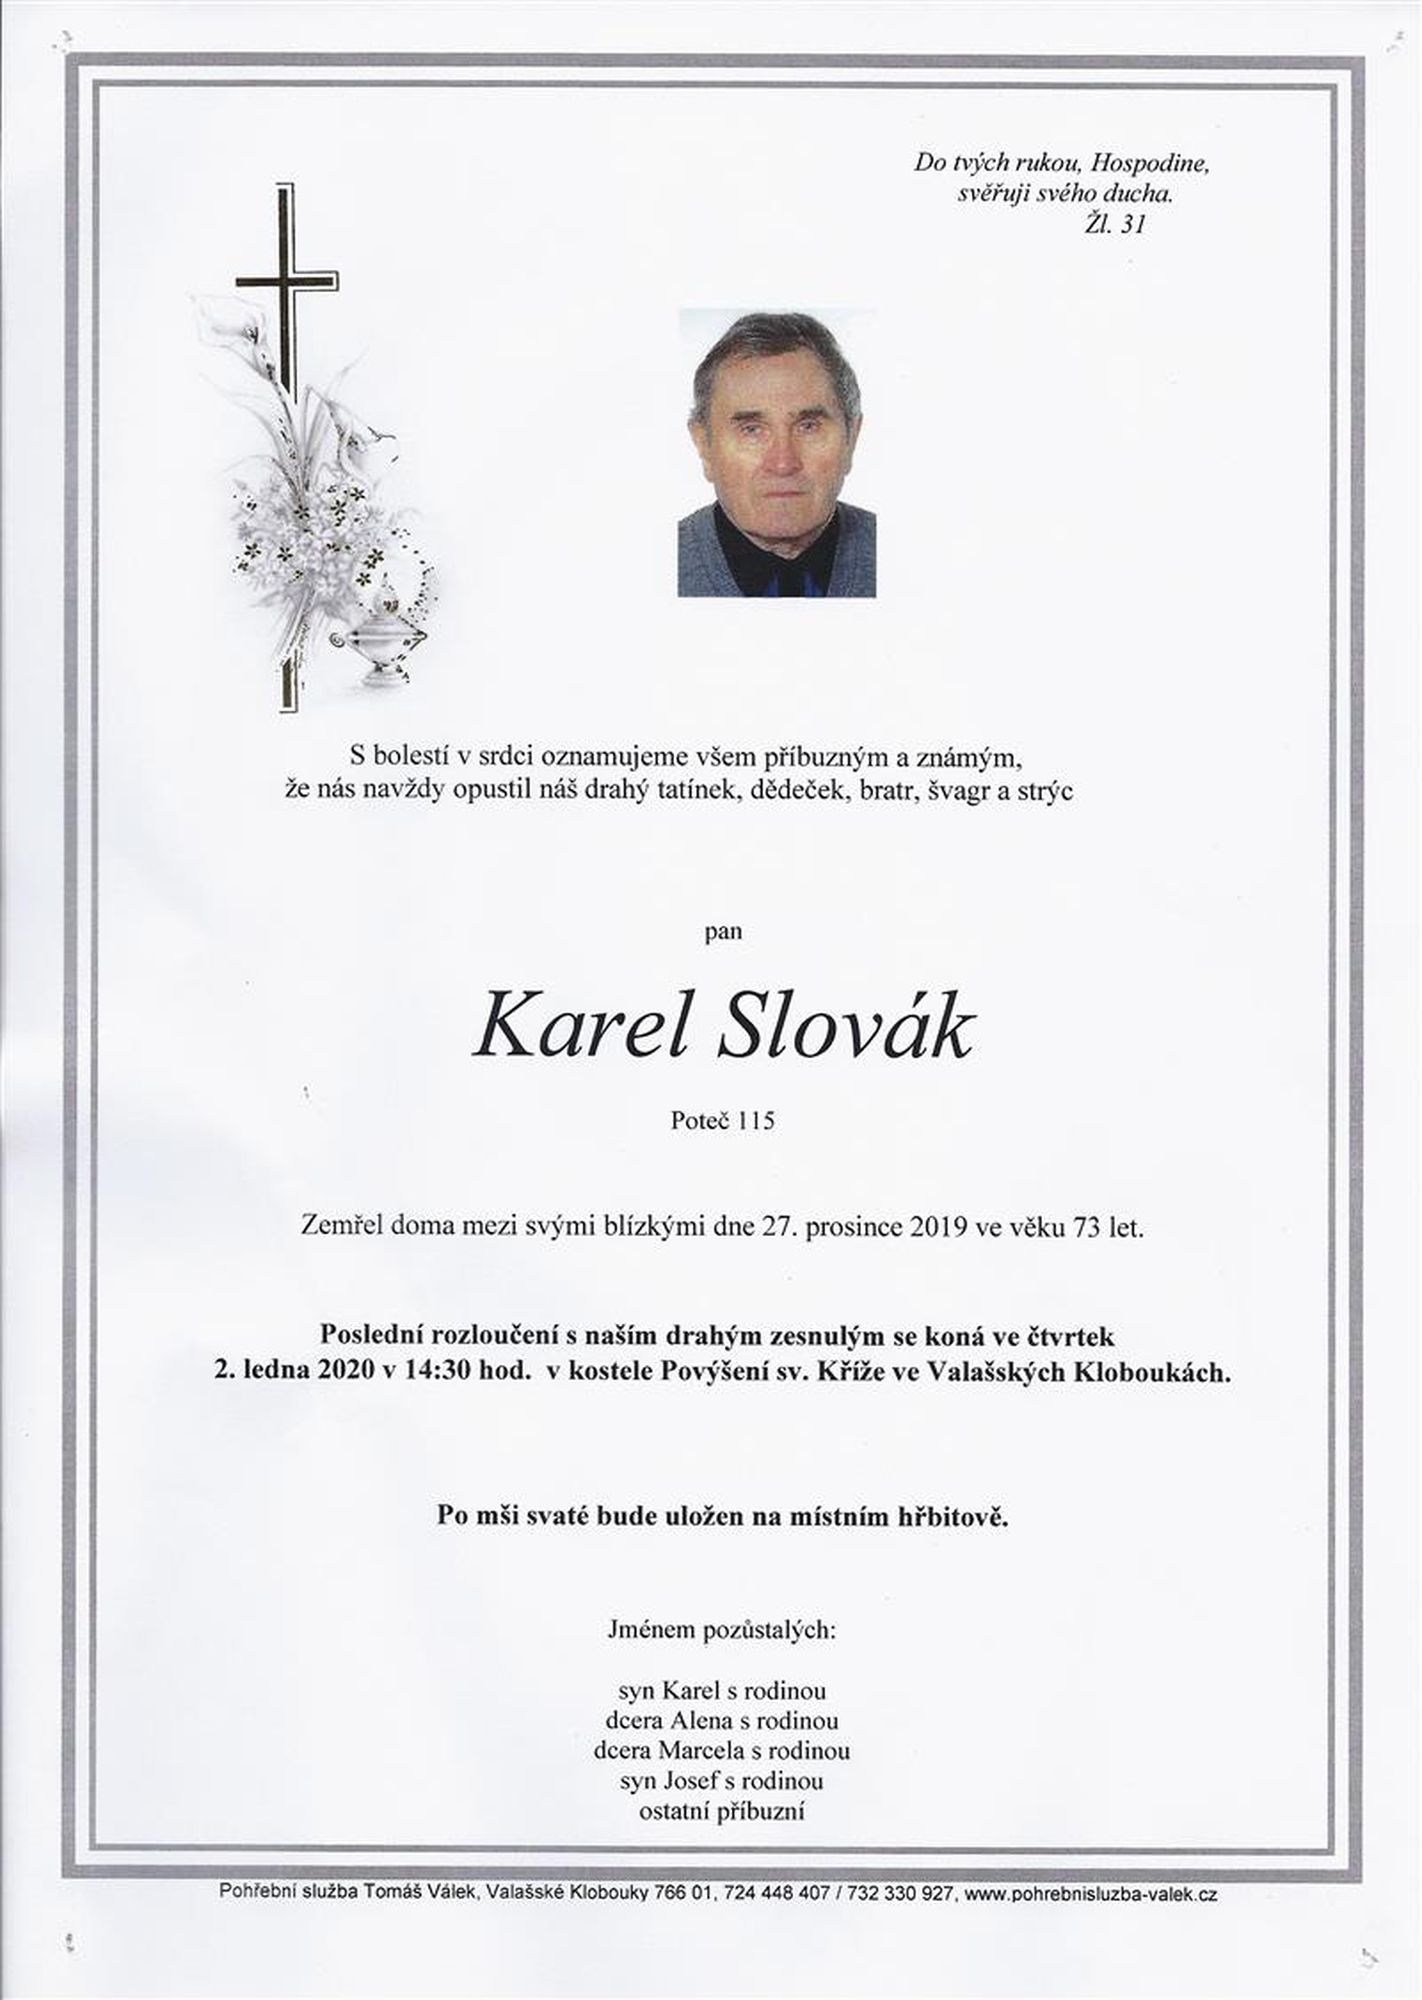 Karel Slovák